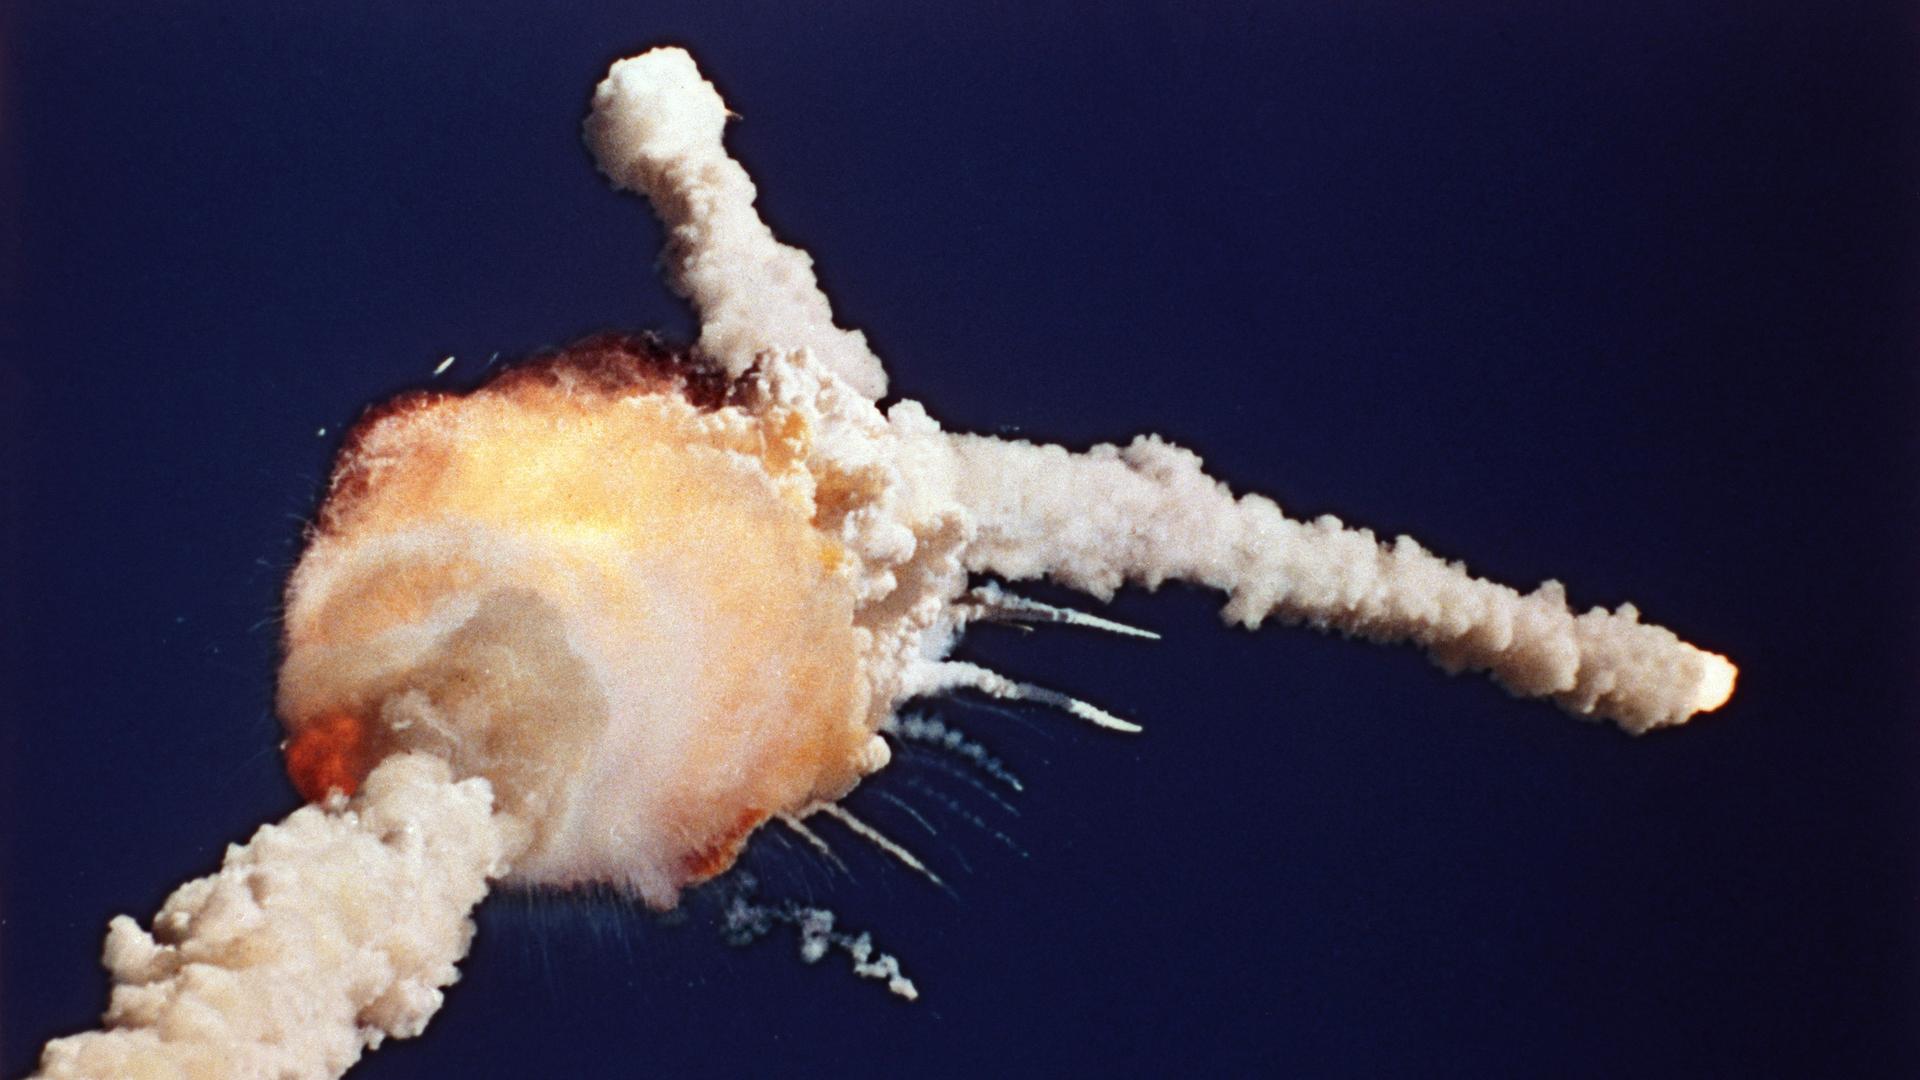 Am 28. Januar 1986 explodierte das NASA-Spaceshuttle Challenger kurz nach dem Start; das Archivfoto zeigt die Explosion am Himmel.(AP Photo/Bruce Weaver, File)